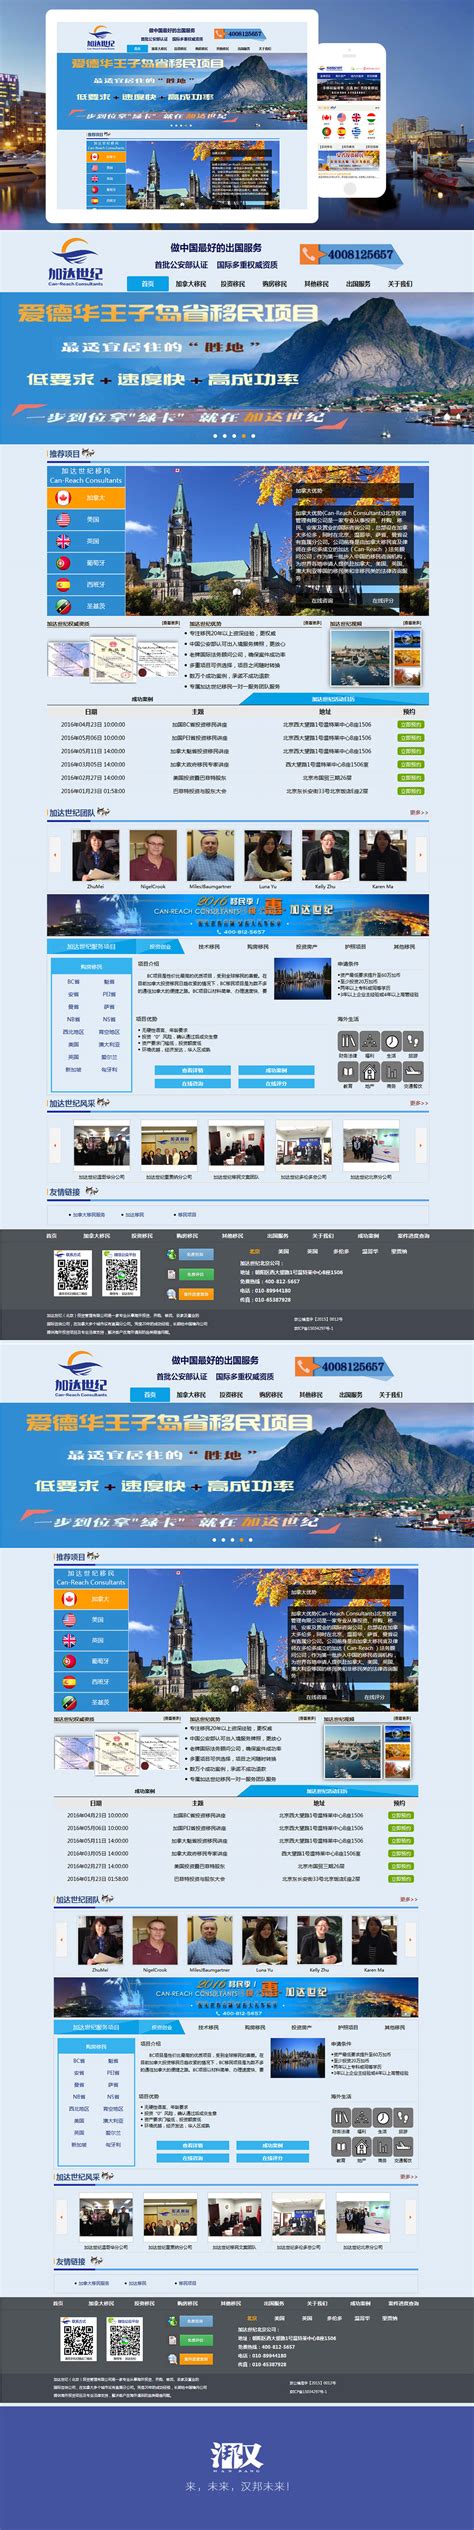 加达世纪移民 手机版官网建设-汉邦未来北京网站建设公司